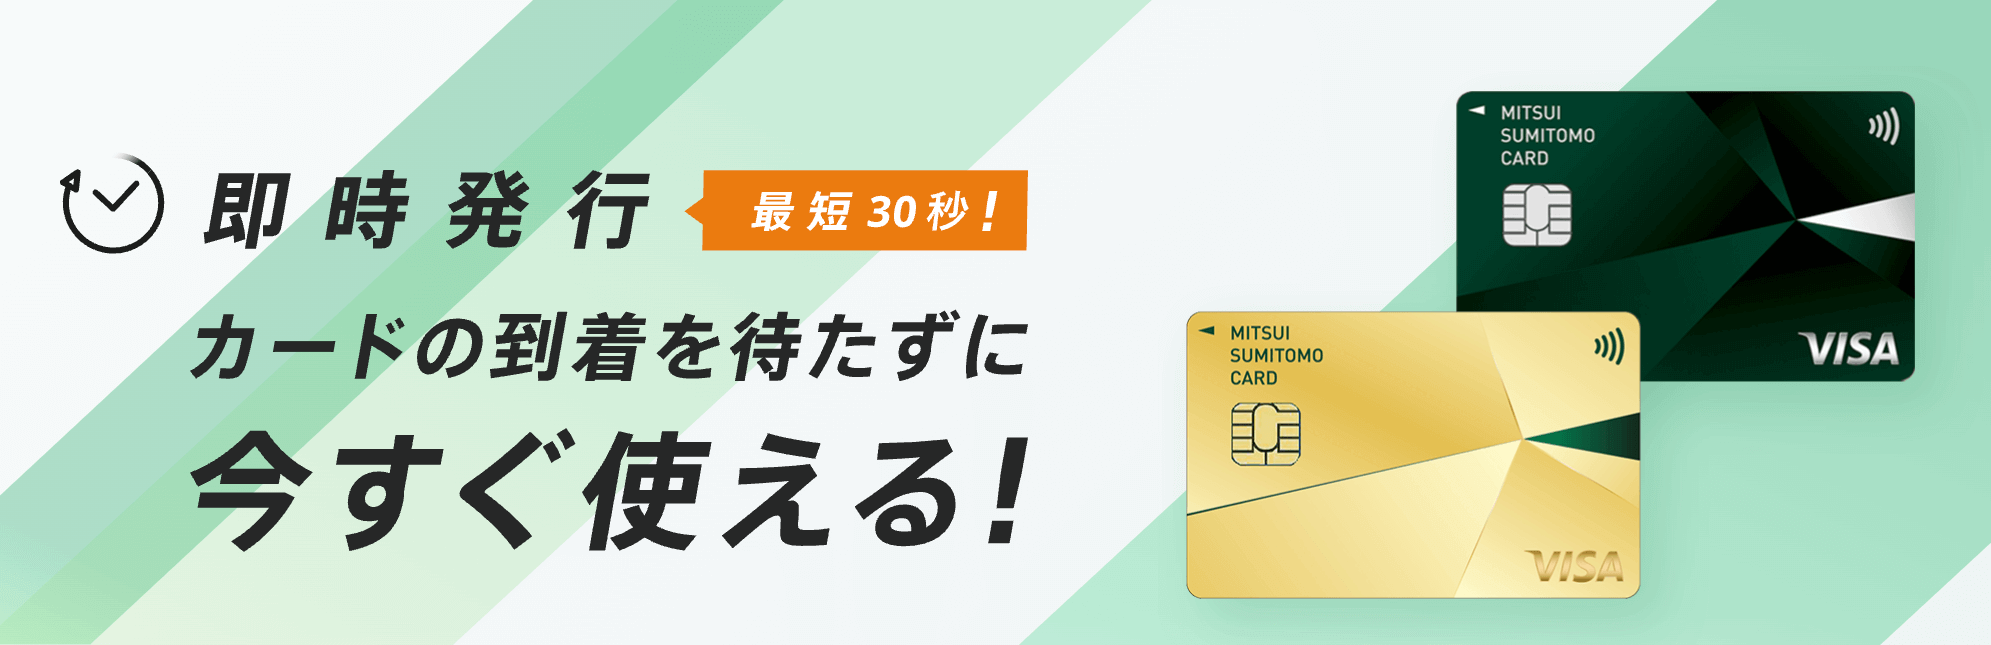 三井住友カード即日発行